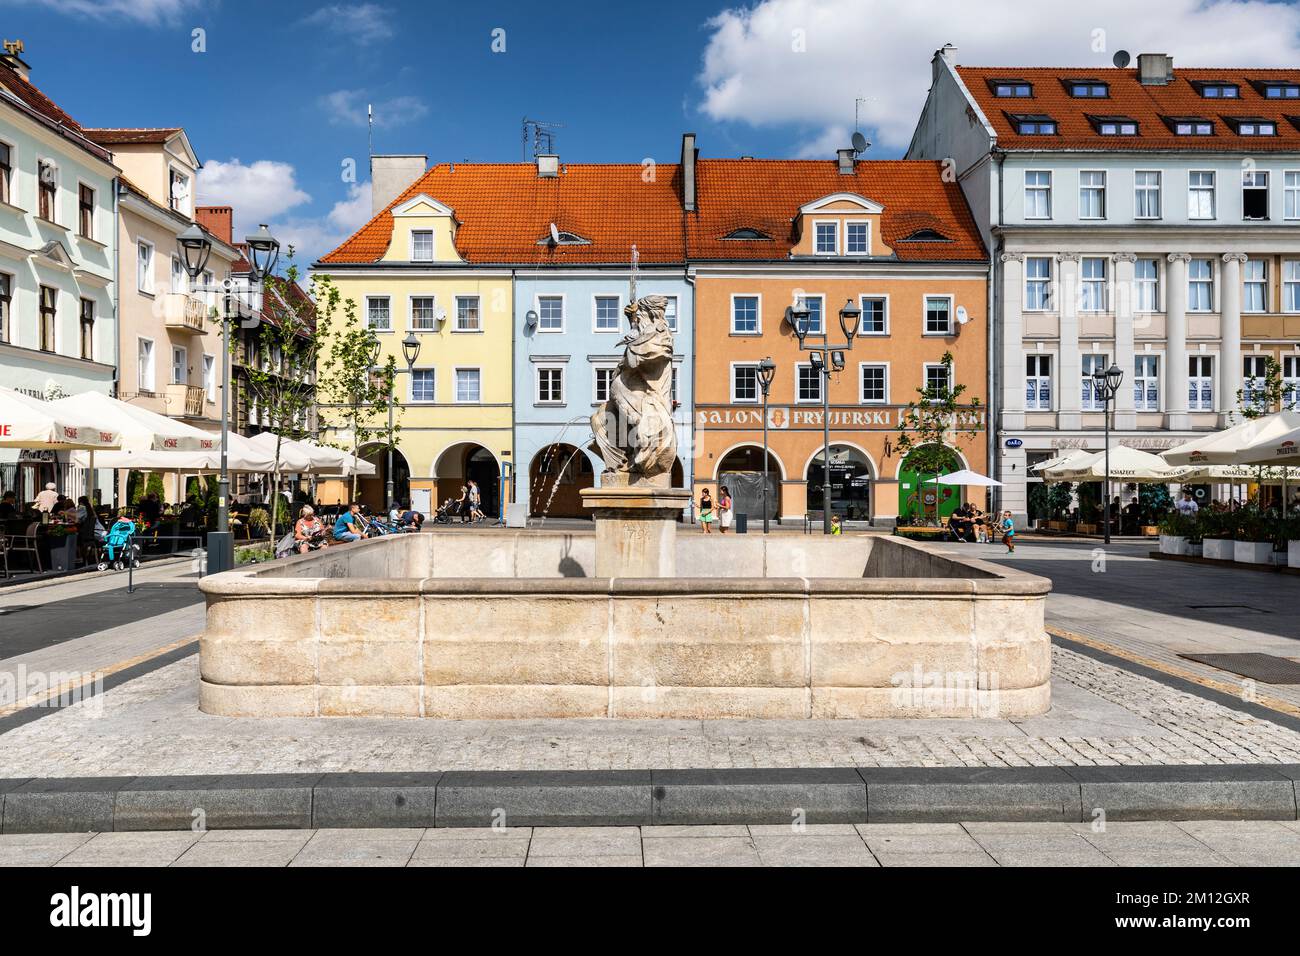 Europe, Poland, Silesian Voivodeship, Gliwice Stock Photo